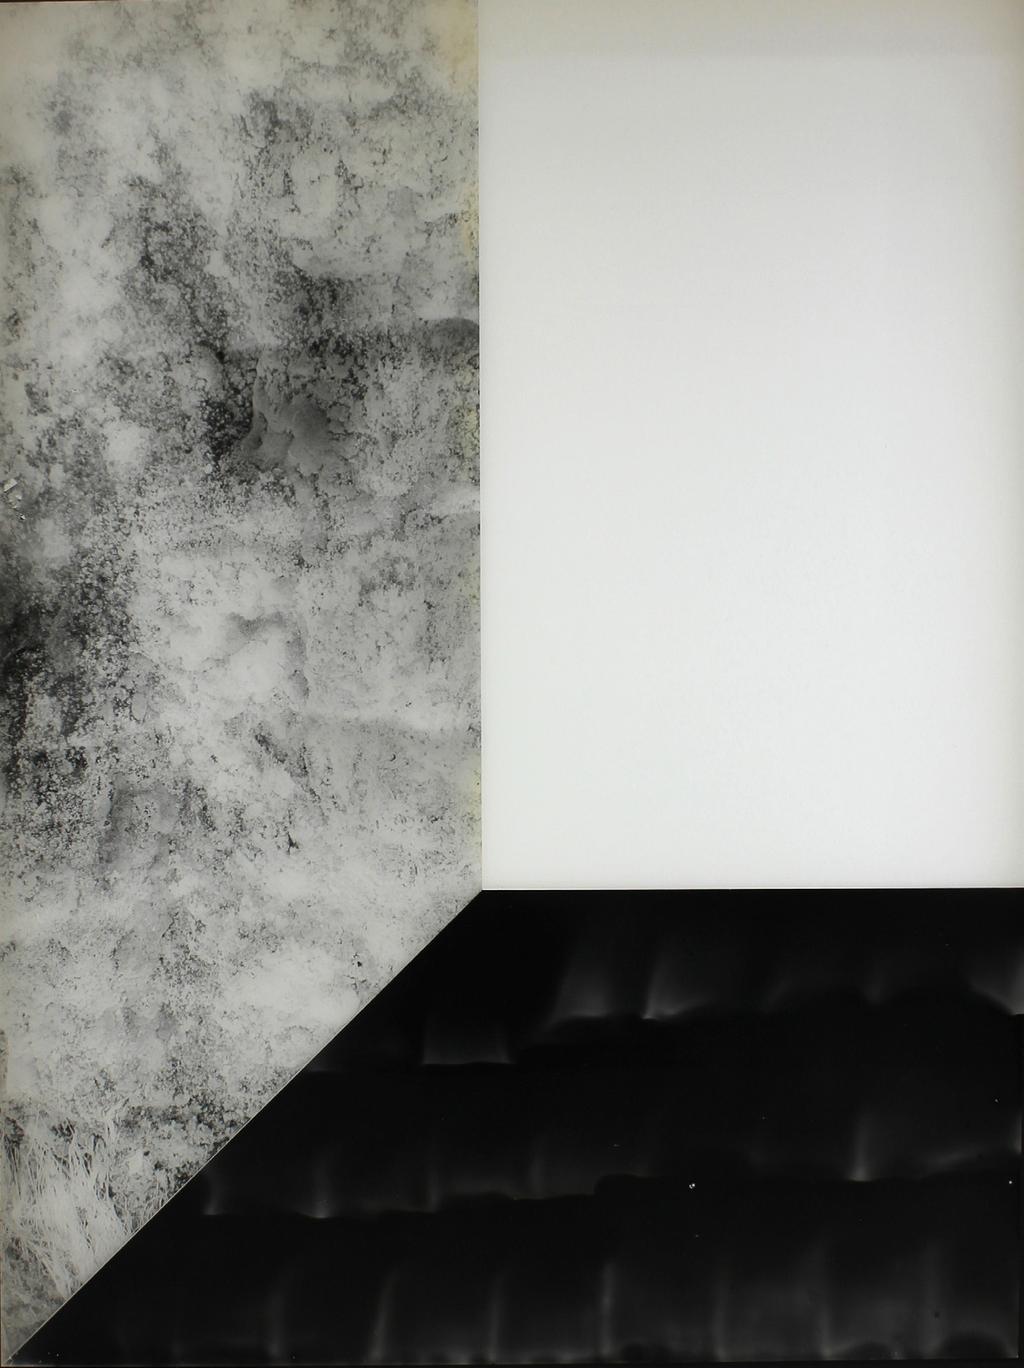 Pia Rondé & Fabien Saleil, Noir humide, 2016 Photogram and argentic